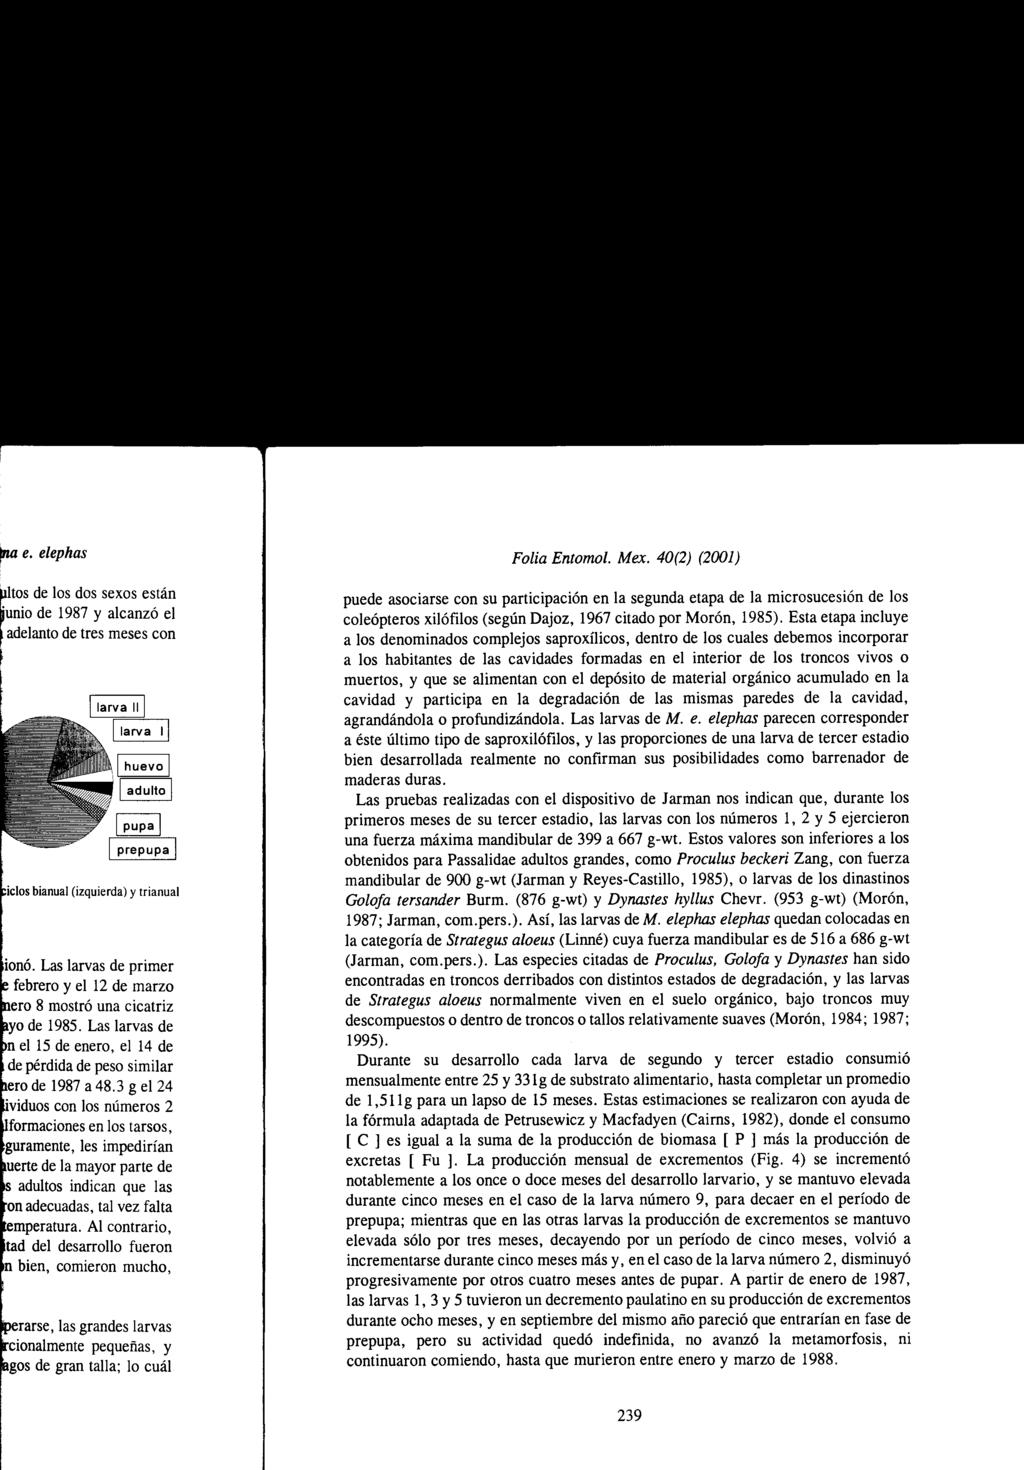 Folia Entomol. Mex. 40(2) (2001) puede asociarse con su participación en la segunda etapa de la microsucesión de los coleópteros xilófilos (según Dajoz, 1967 citado por Morón, 1985).